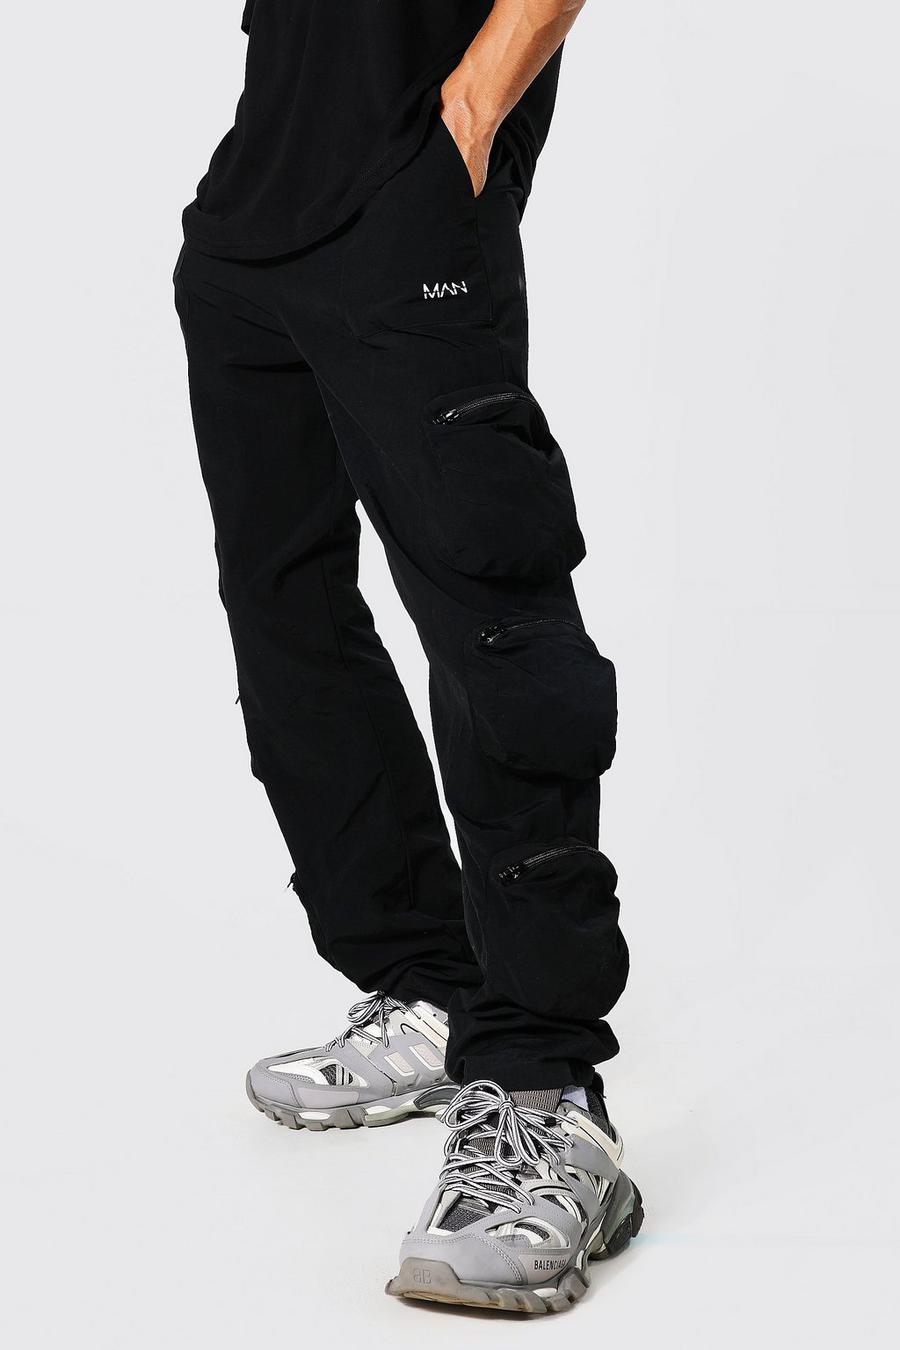 שחור  מכנסי דגמ"ח לגברים גבוהים מבד מעטפת תלת-ממדי עם קמטים עם כיסים רבים  image number 1